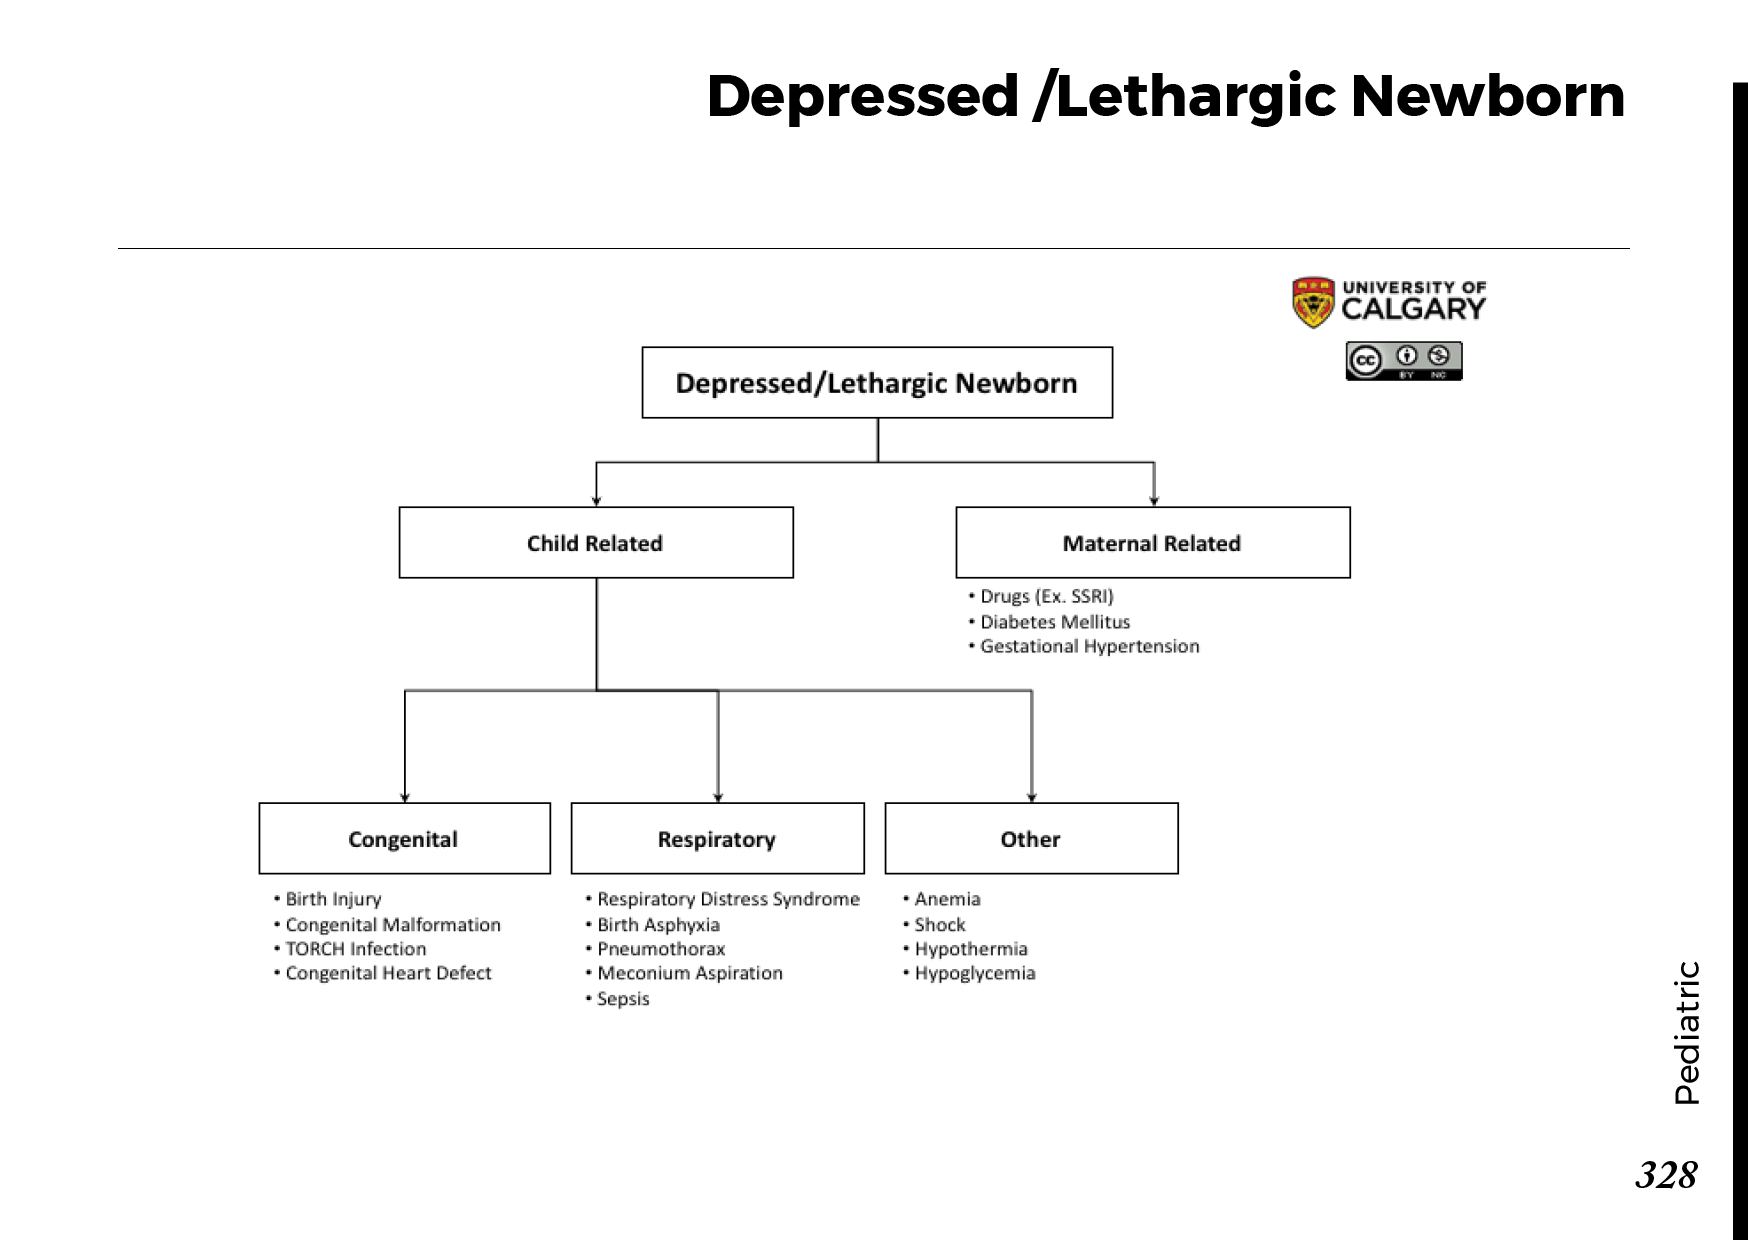 DEPRESSED/LETHARGIC NEWBORN Scheme